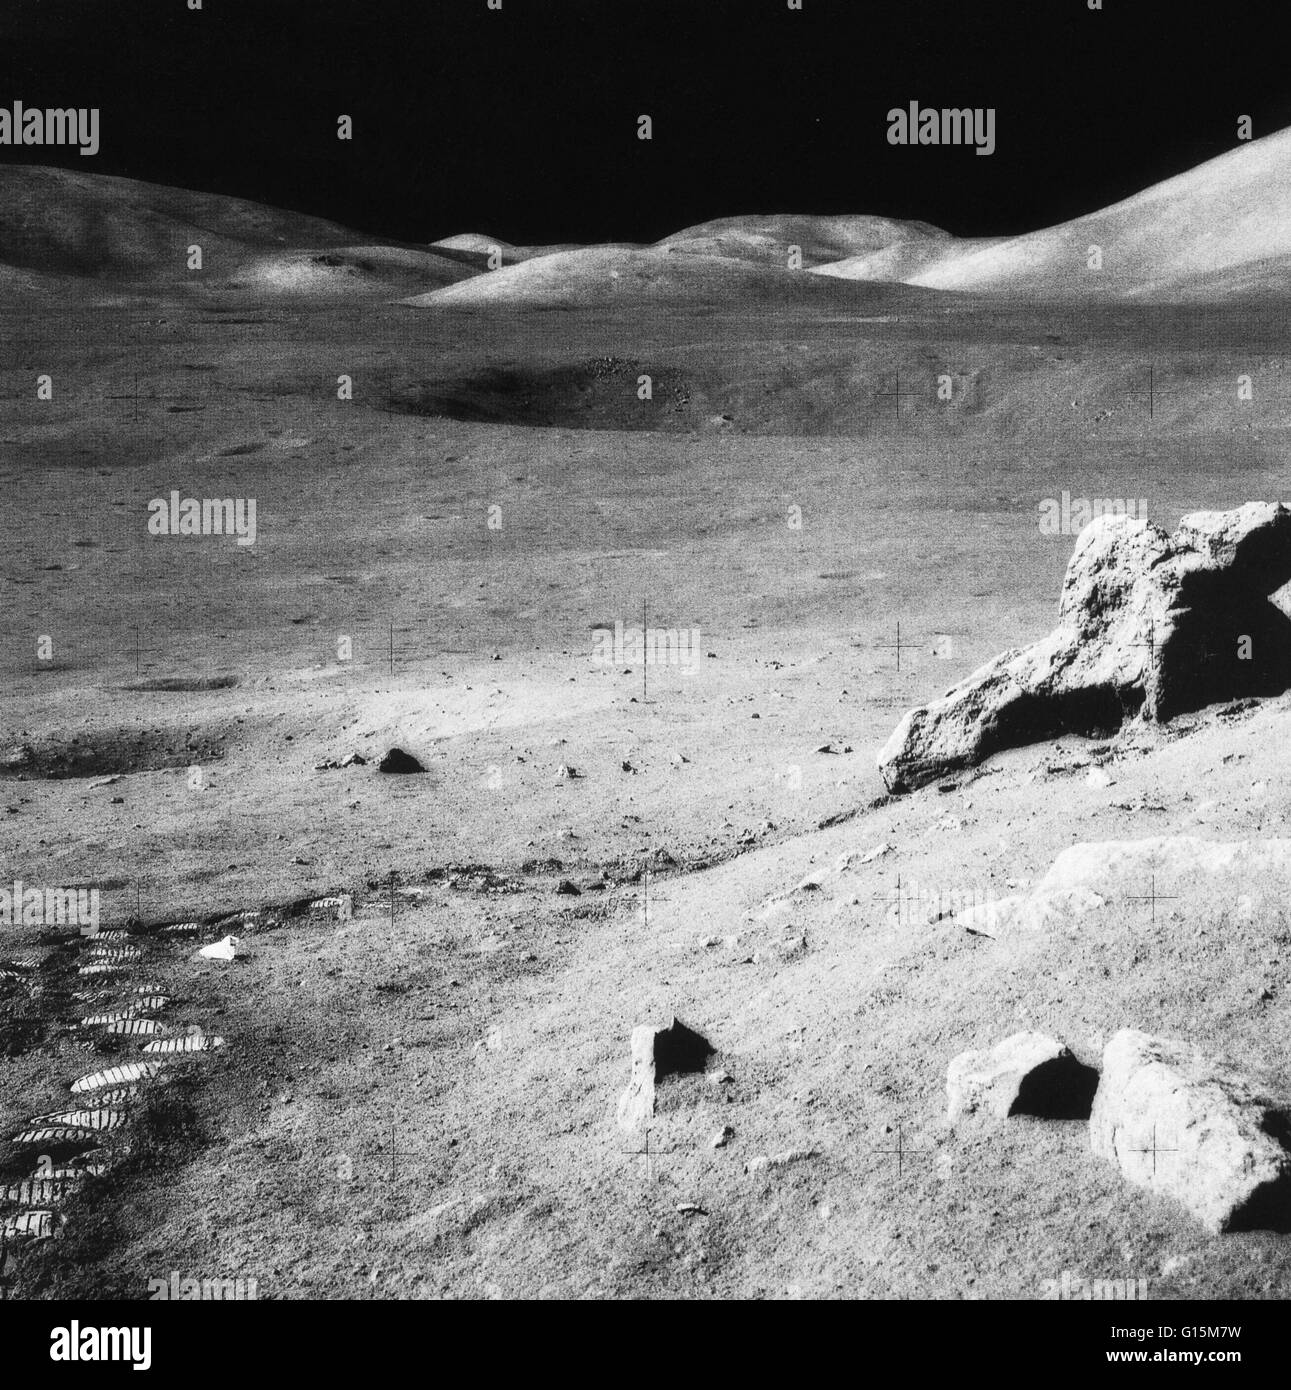 Paesaggio lunare. La valle di Taurus-Littrow e il massiccio del Nord (superiore destra) sulla Luna. Questa è stata l'ultima fotografia presa sulla superficie della luna, a seguito della missione Apollo 17 del 1972 (7-19 dicembre). Footprint e un scartato rock collectio Foto Stock